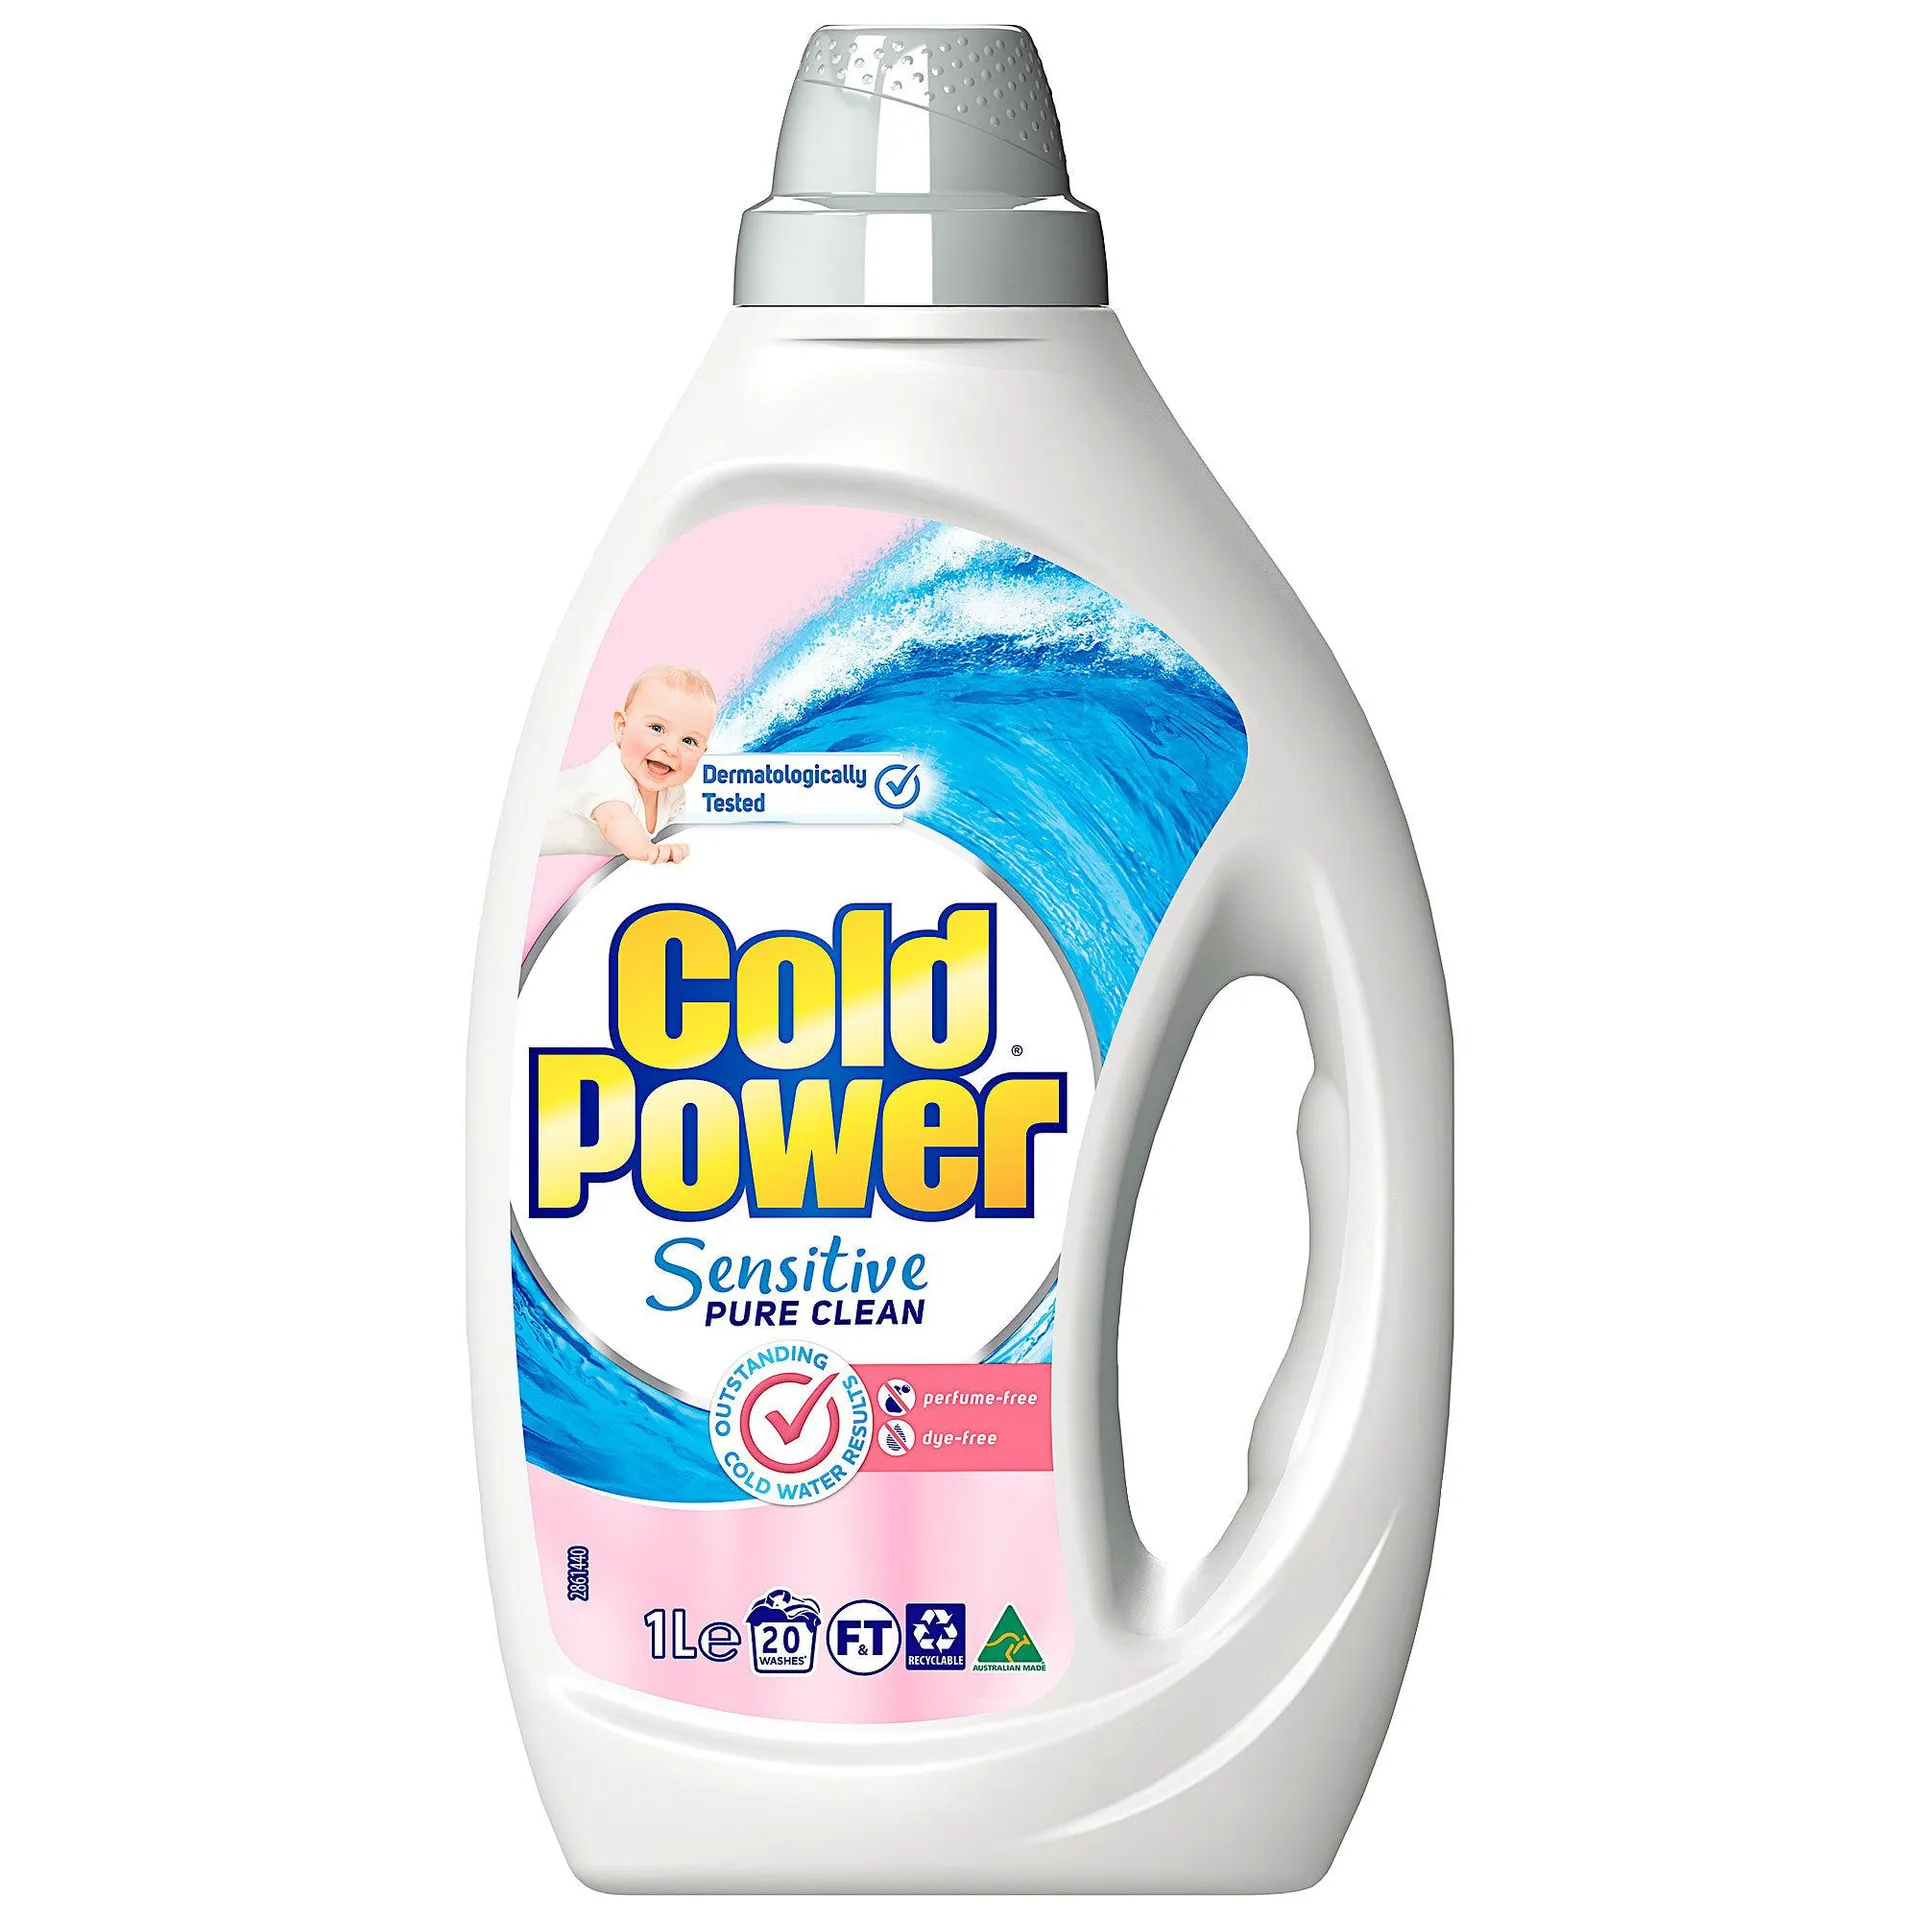 Cold Power Sensitive Pure Clean 1l